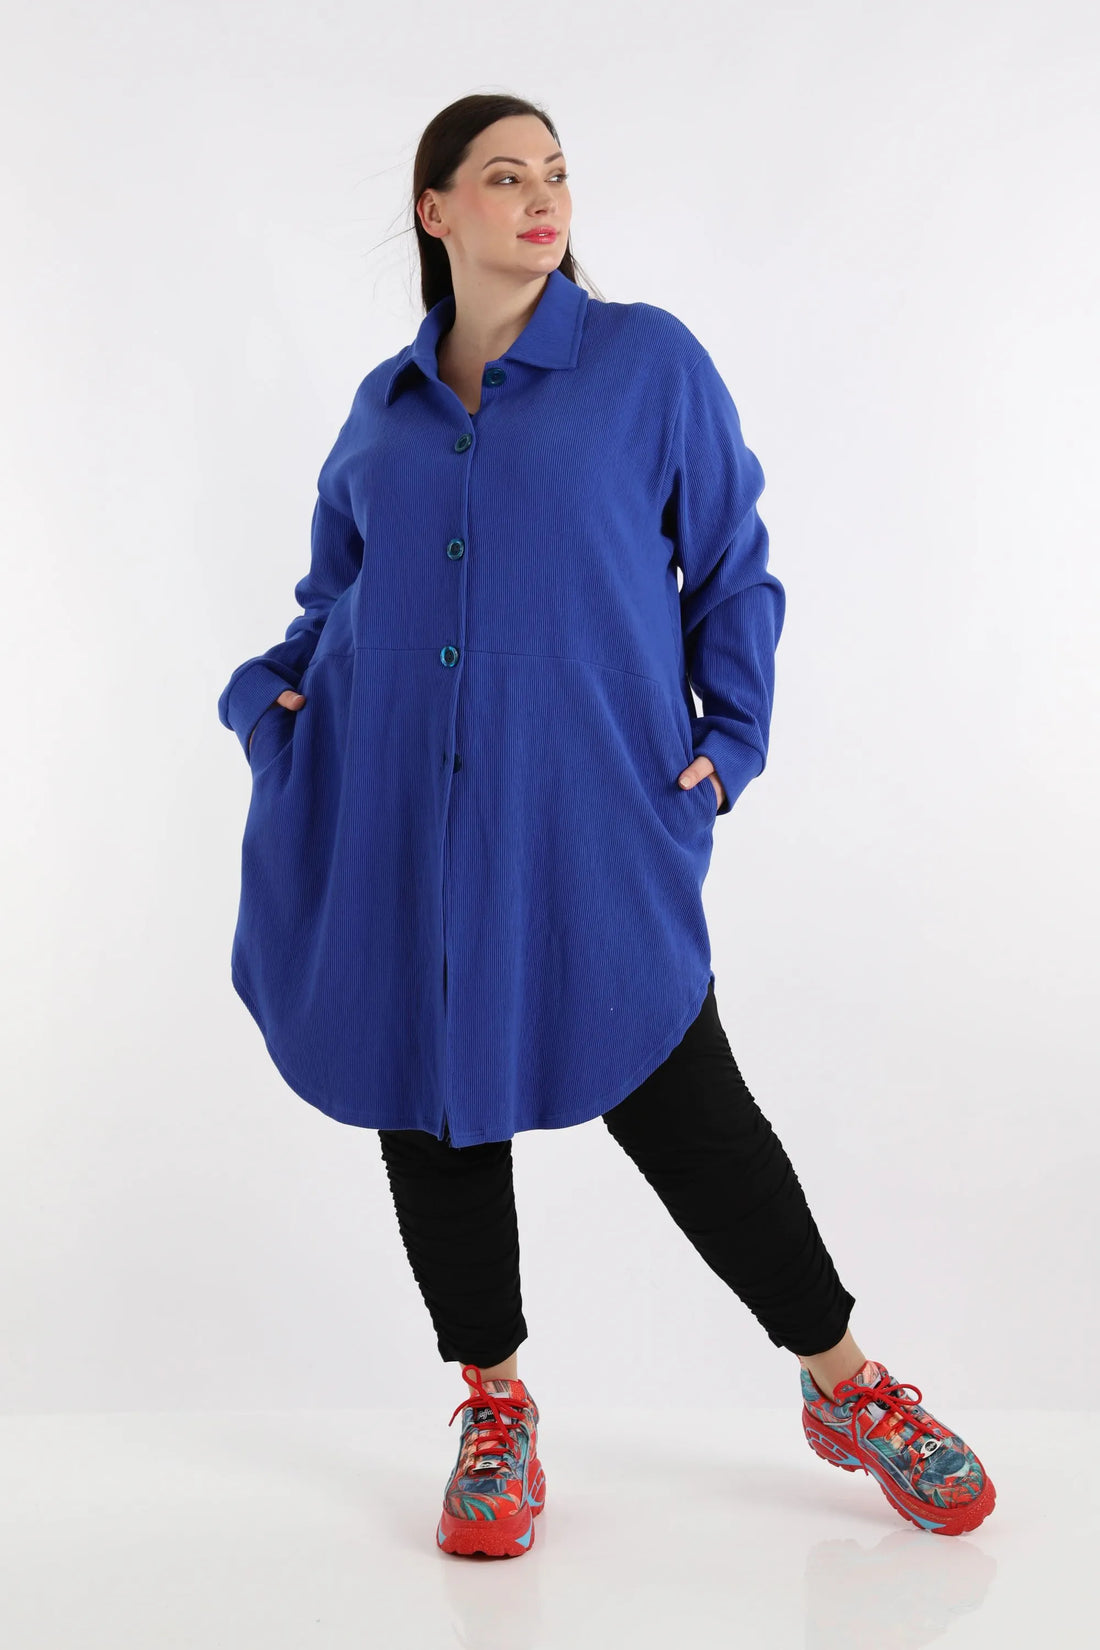 Bluse von AKH Fashion aus Baumwolle in gerundeter Form, 1252.06881, Blau, Schick, Modern